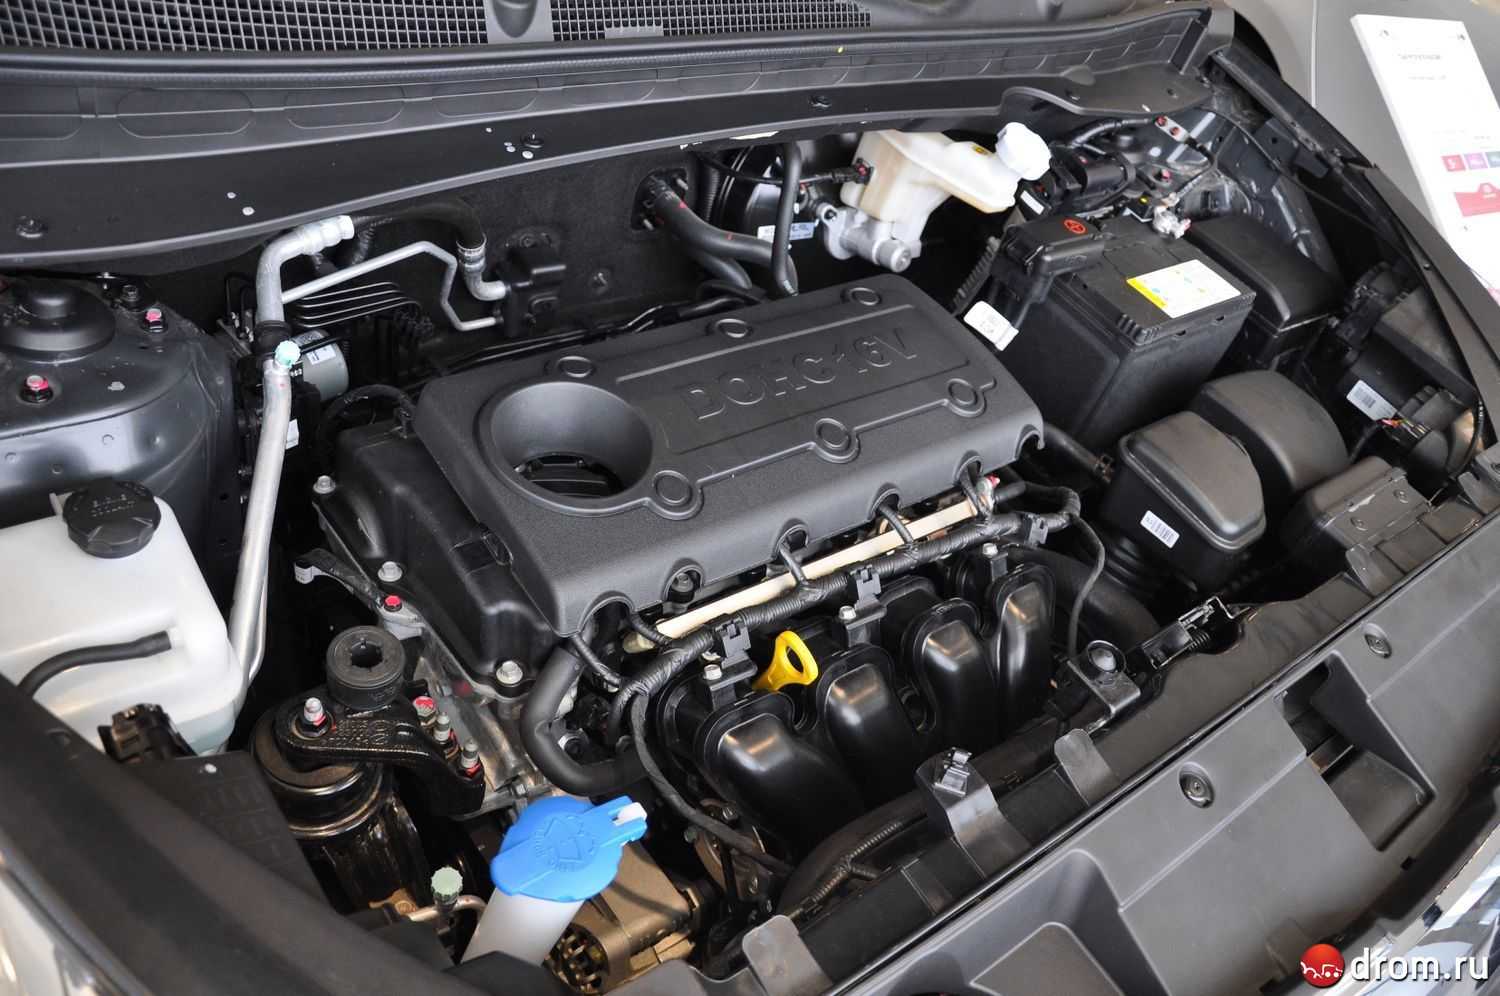 Двигатель g4gc kia, hyundai, технические характеристики, какое масло лить, ремонт двигателя g4gc, доработки и тюнинг, схема устройства, рекомендации по обслуживанию